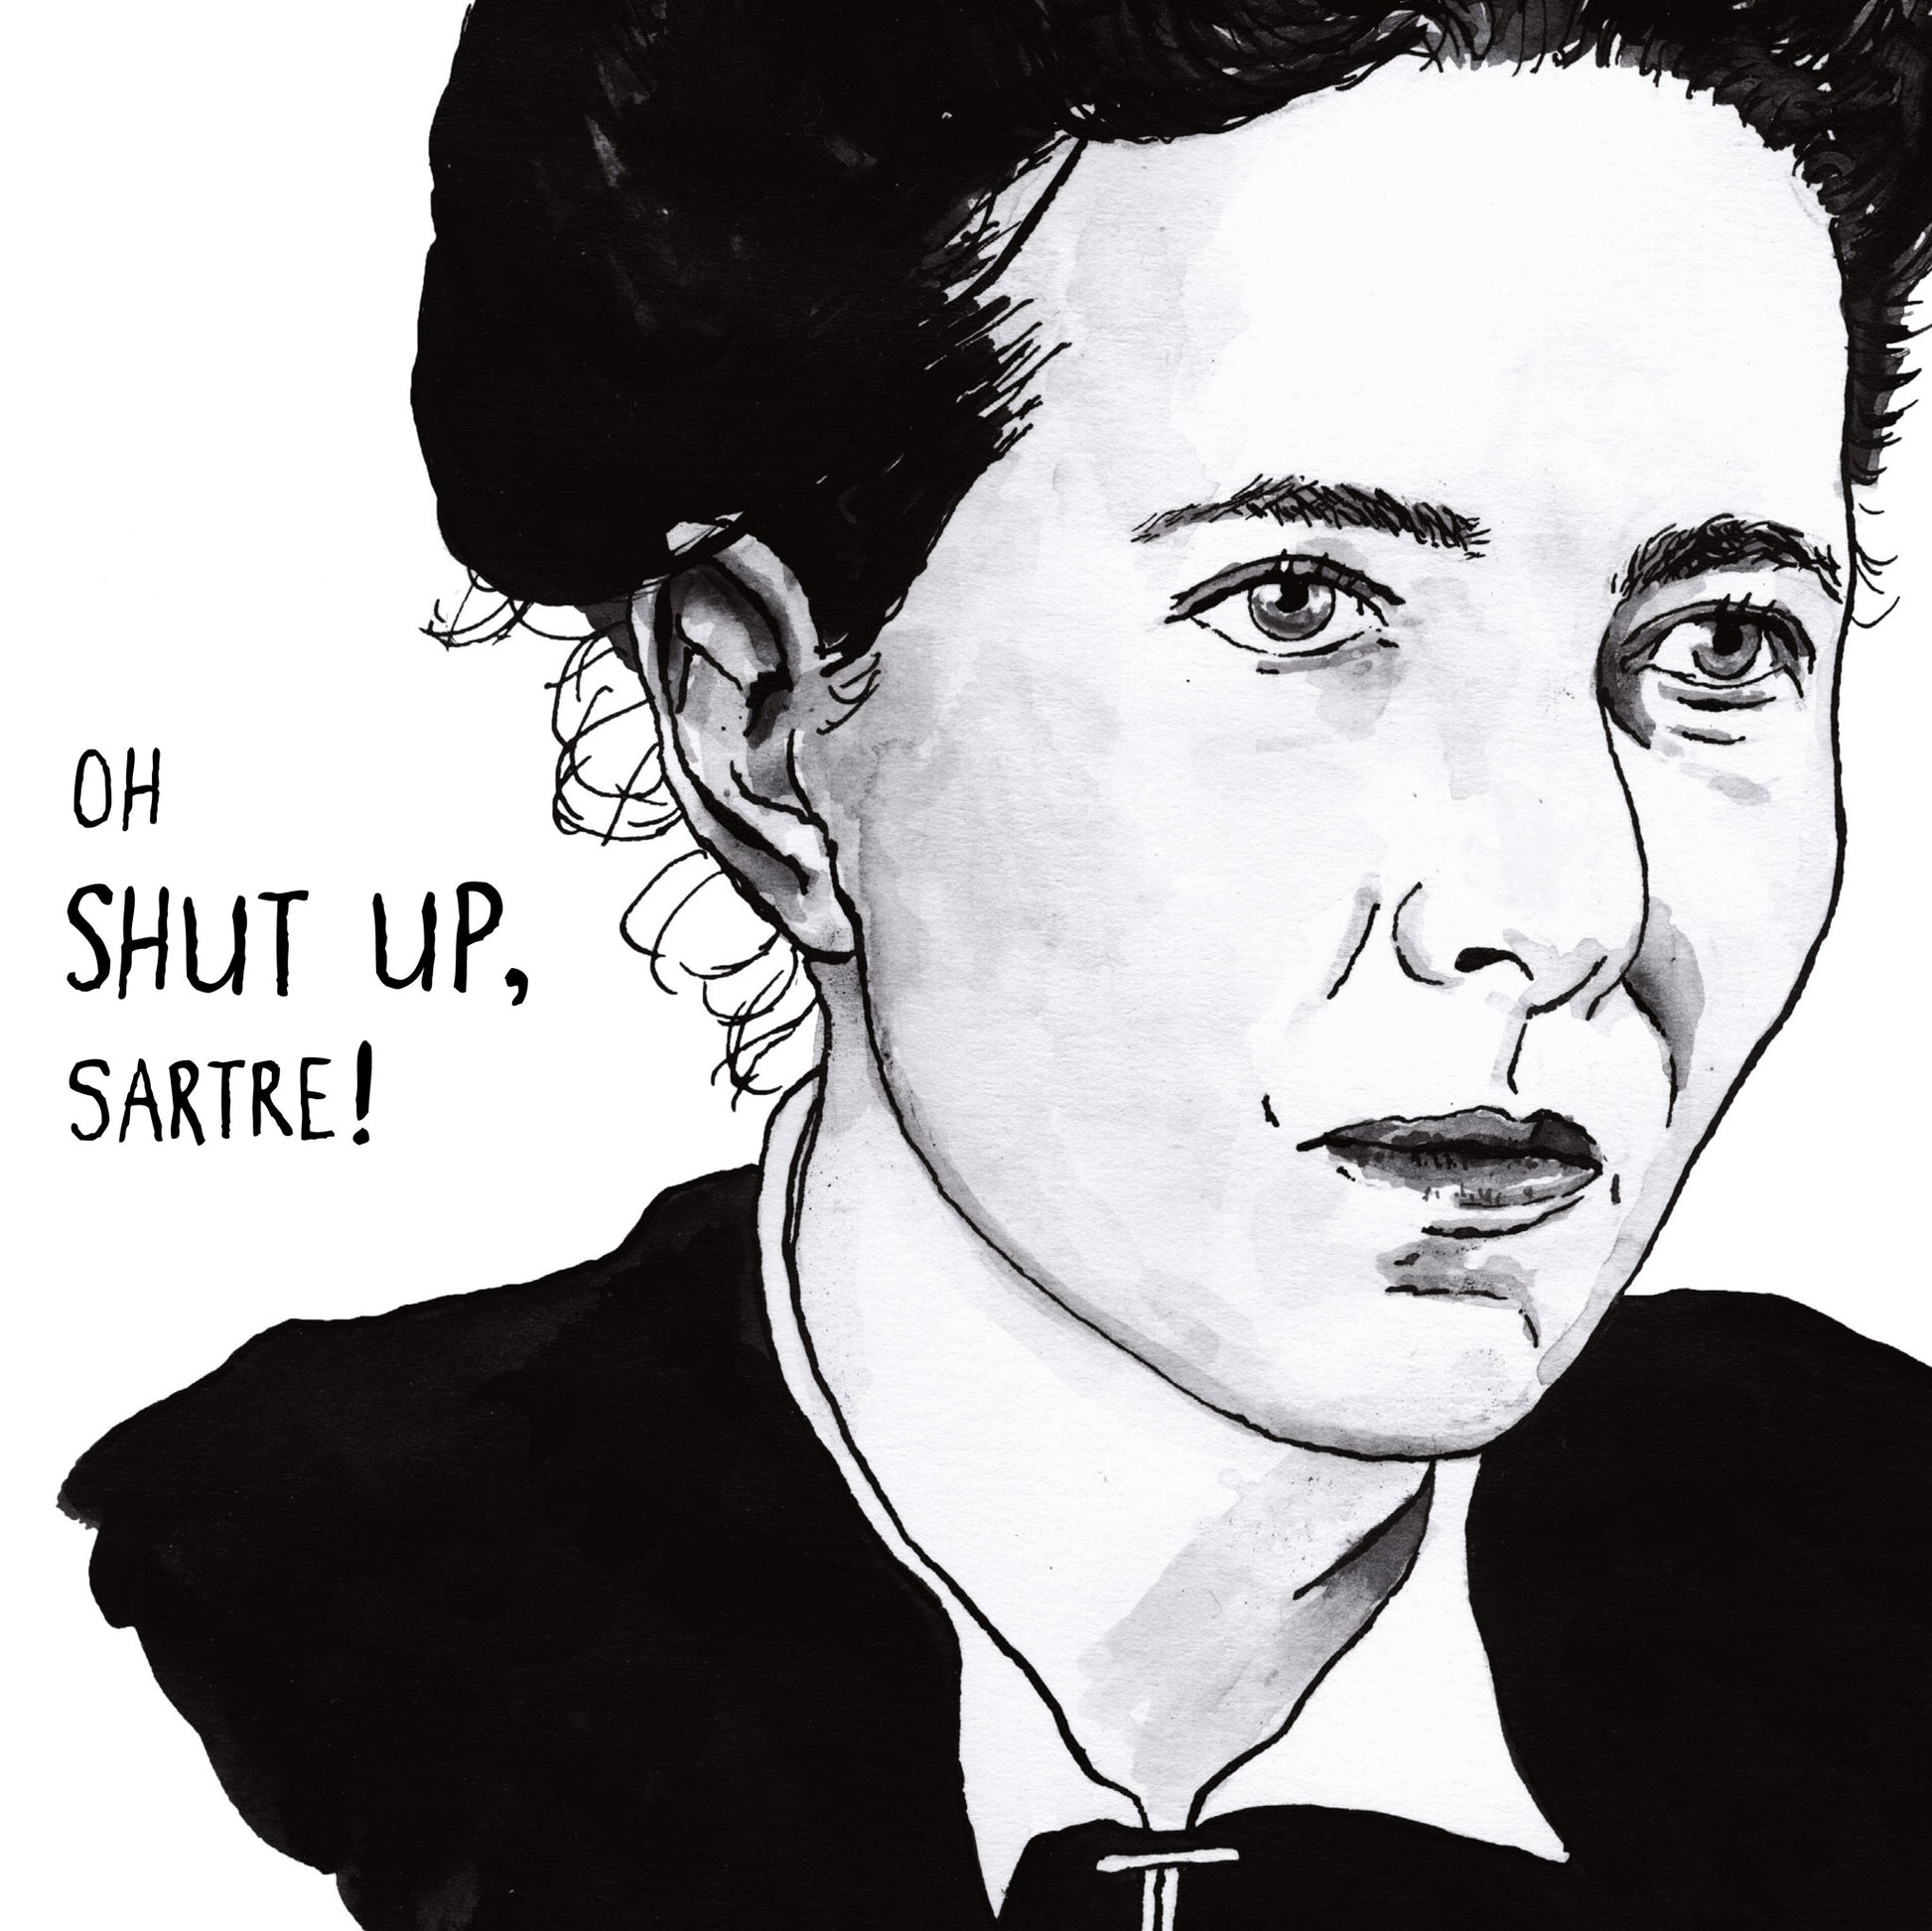 Simone de Beauvoir Portrait Poster Print